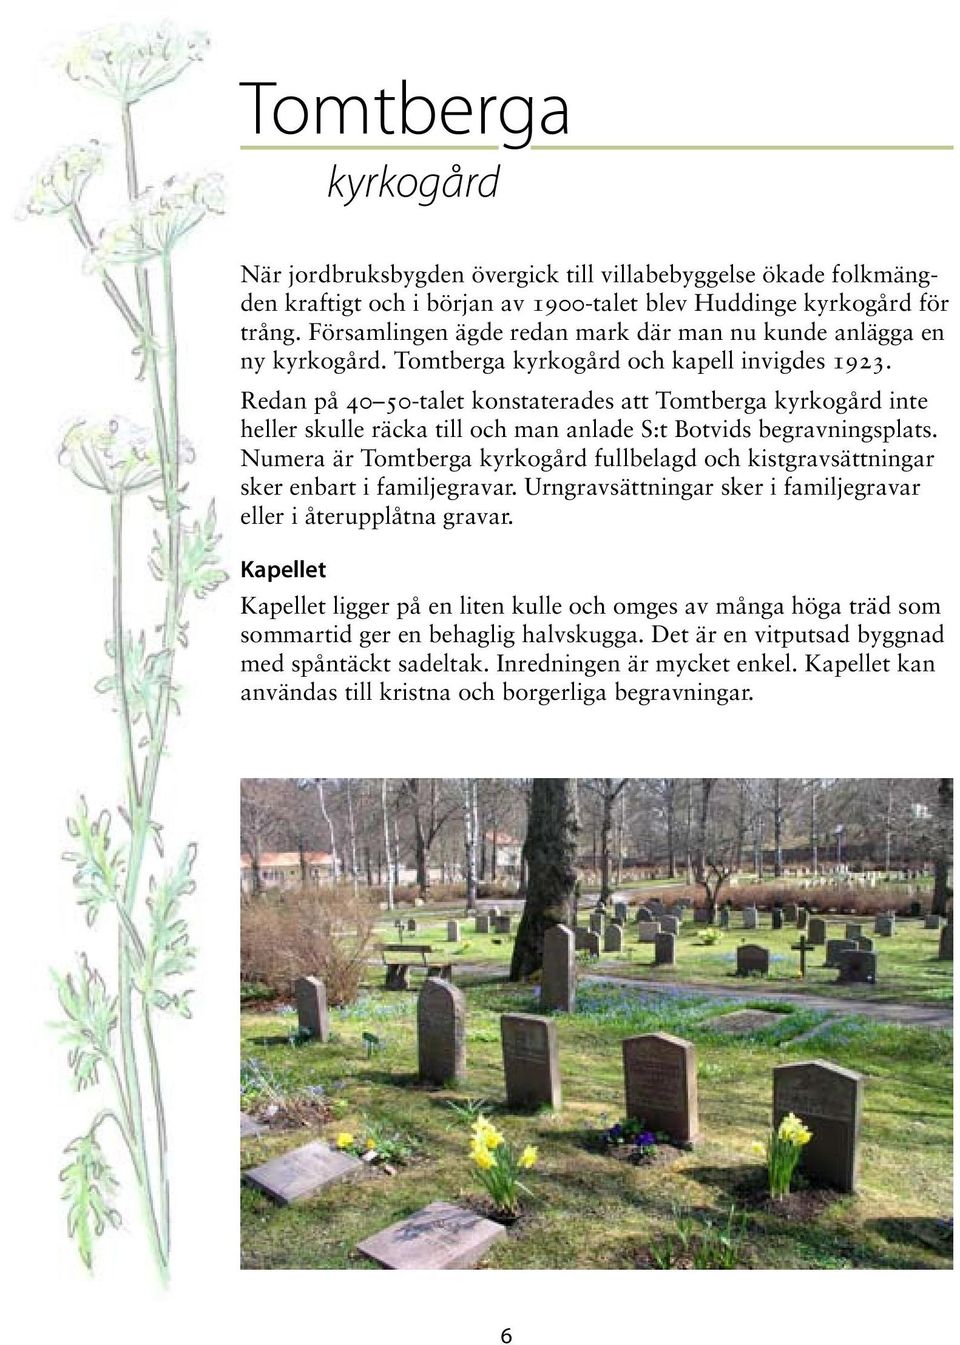 Redan på 40 50-talet konstaterades att Tomtberga kyrkogård inte heller skulle räcka till och man anlade S:t Botvids begravningsplats.